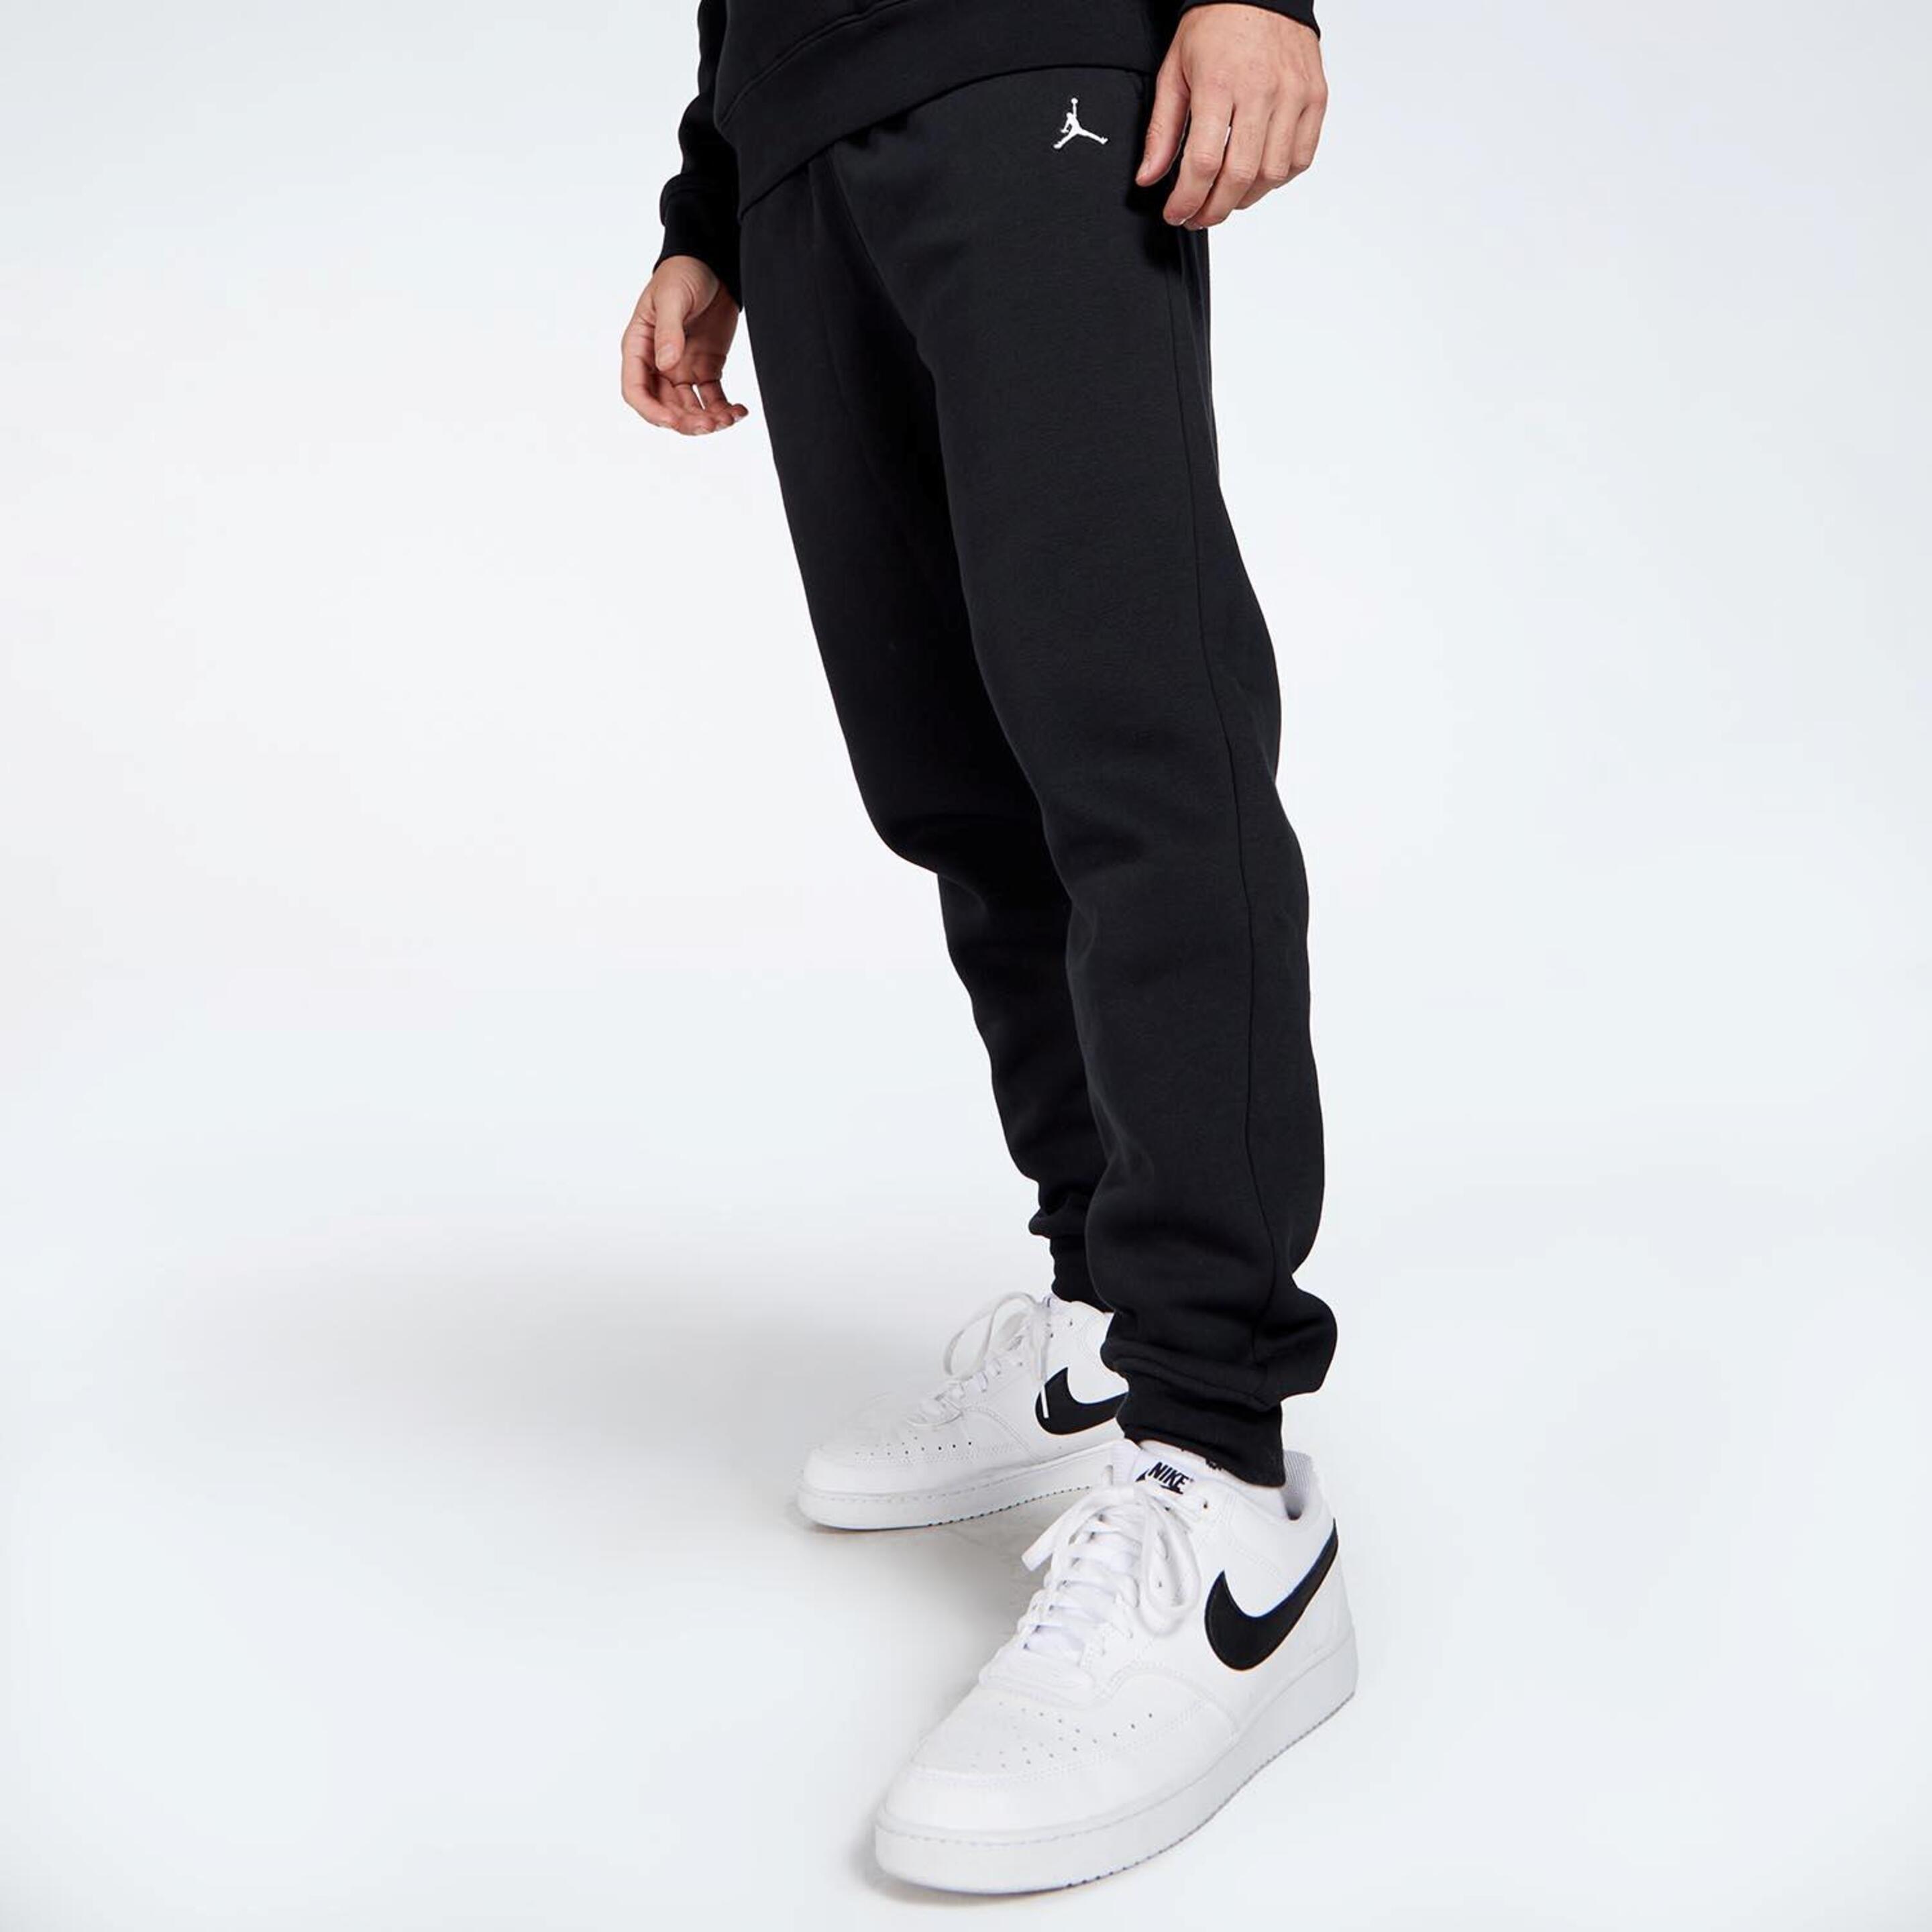 Pantalón Jordan - Nike - Pantalón Chándal Hombre